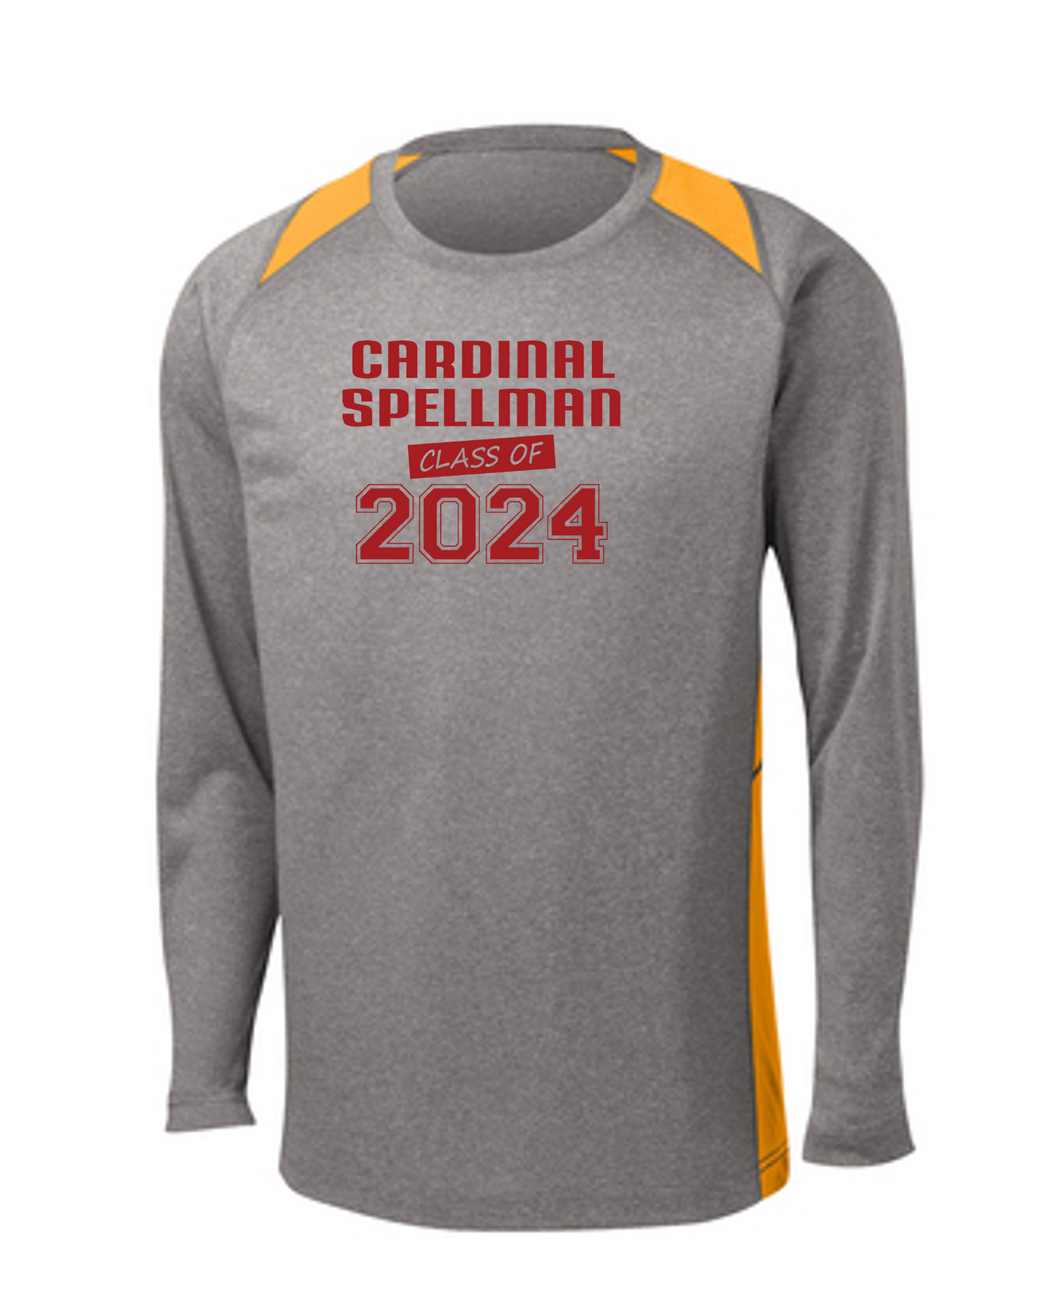 Sport-Tek® Long Sleeve Heather Colorblock Contender™ Tee - Cardinal Spellman Class of 2024